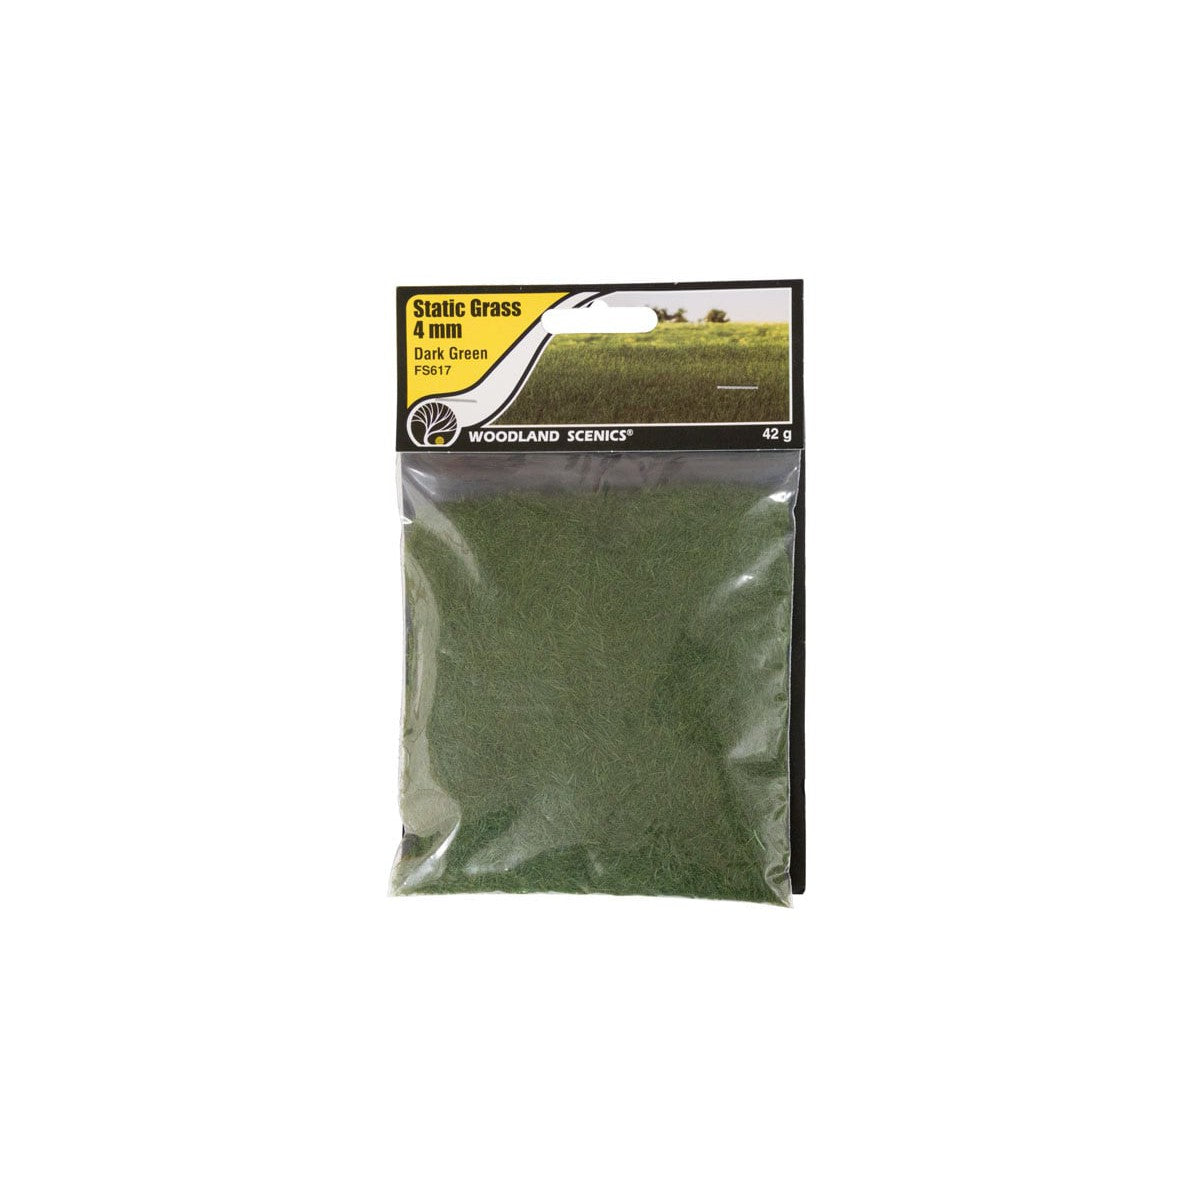 Woodland Scenics FS617 -- 4mm Static Grass Dark Green